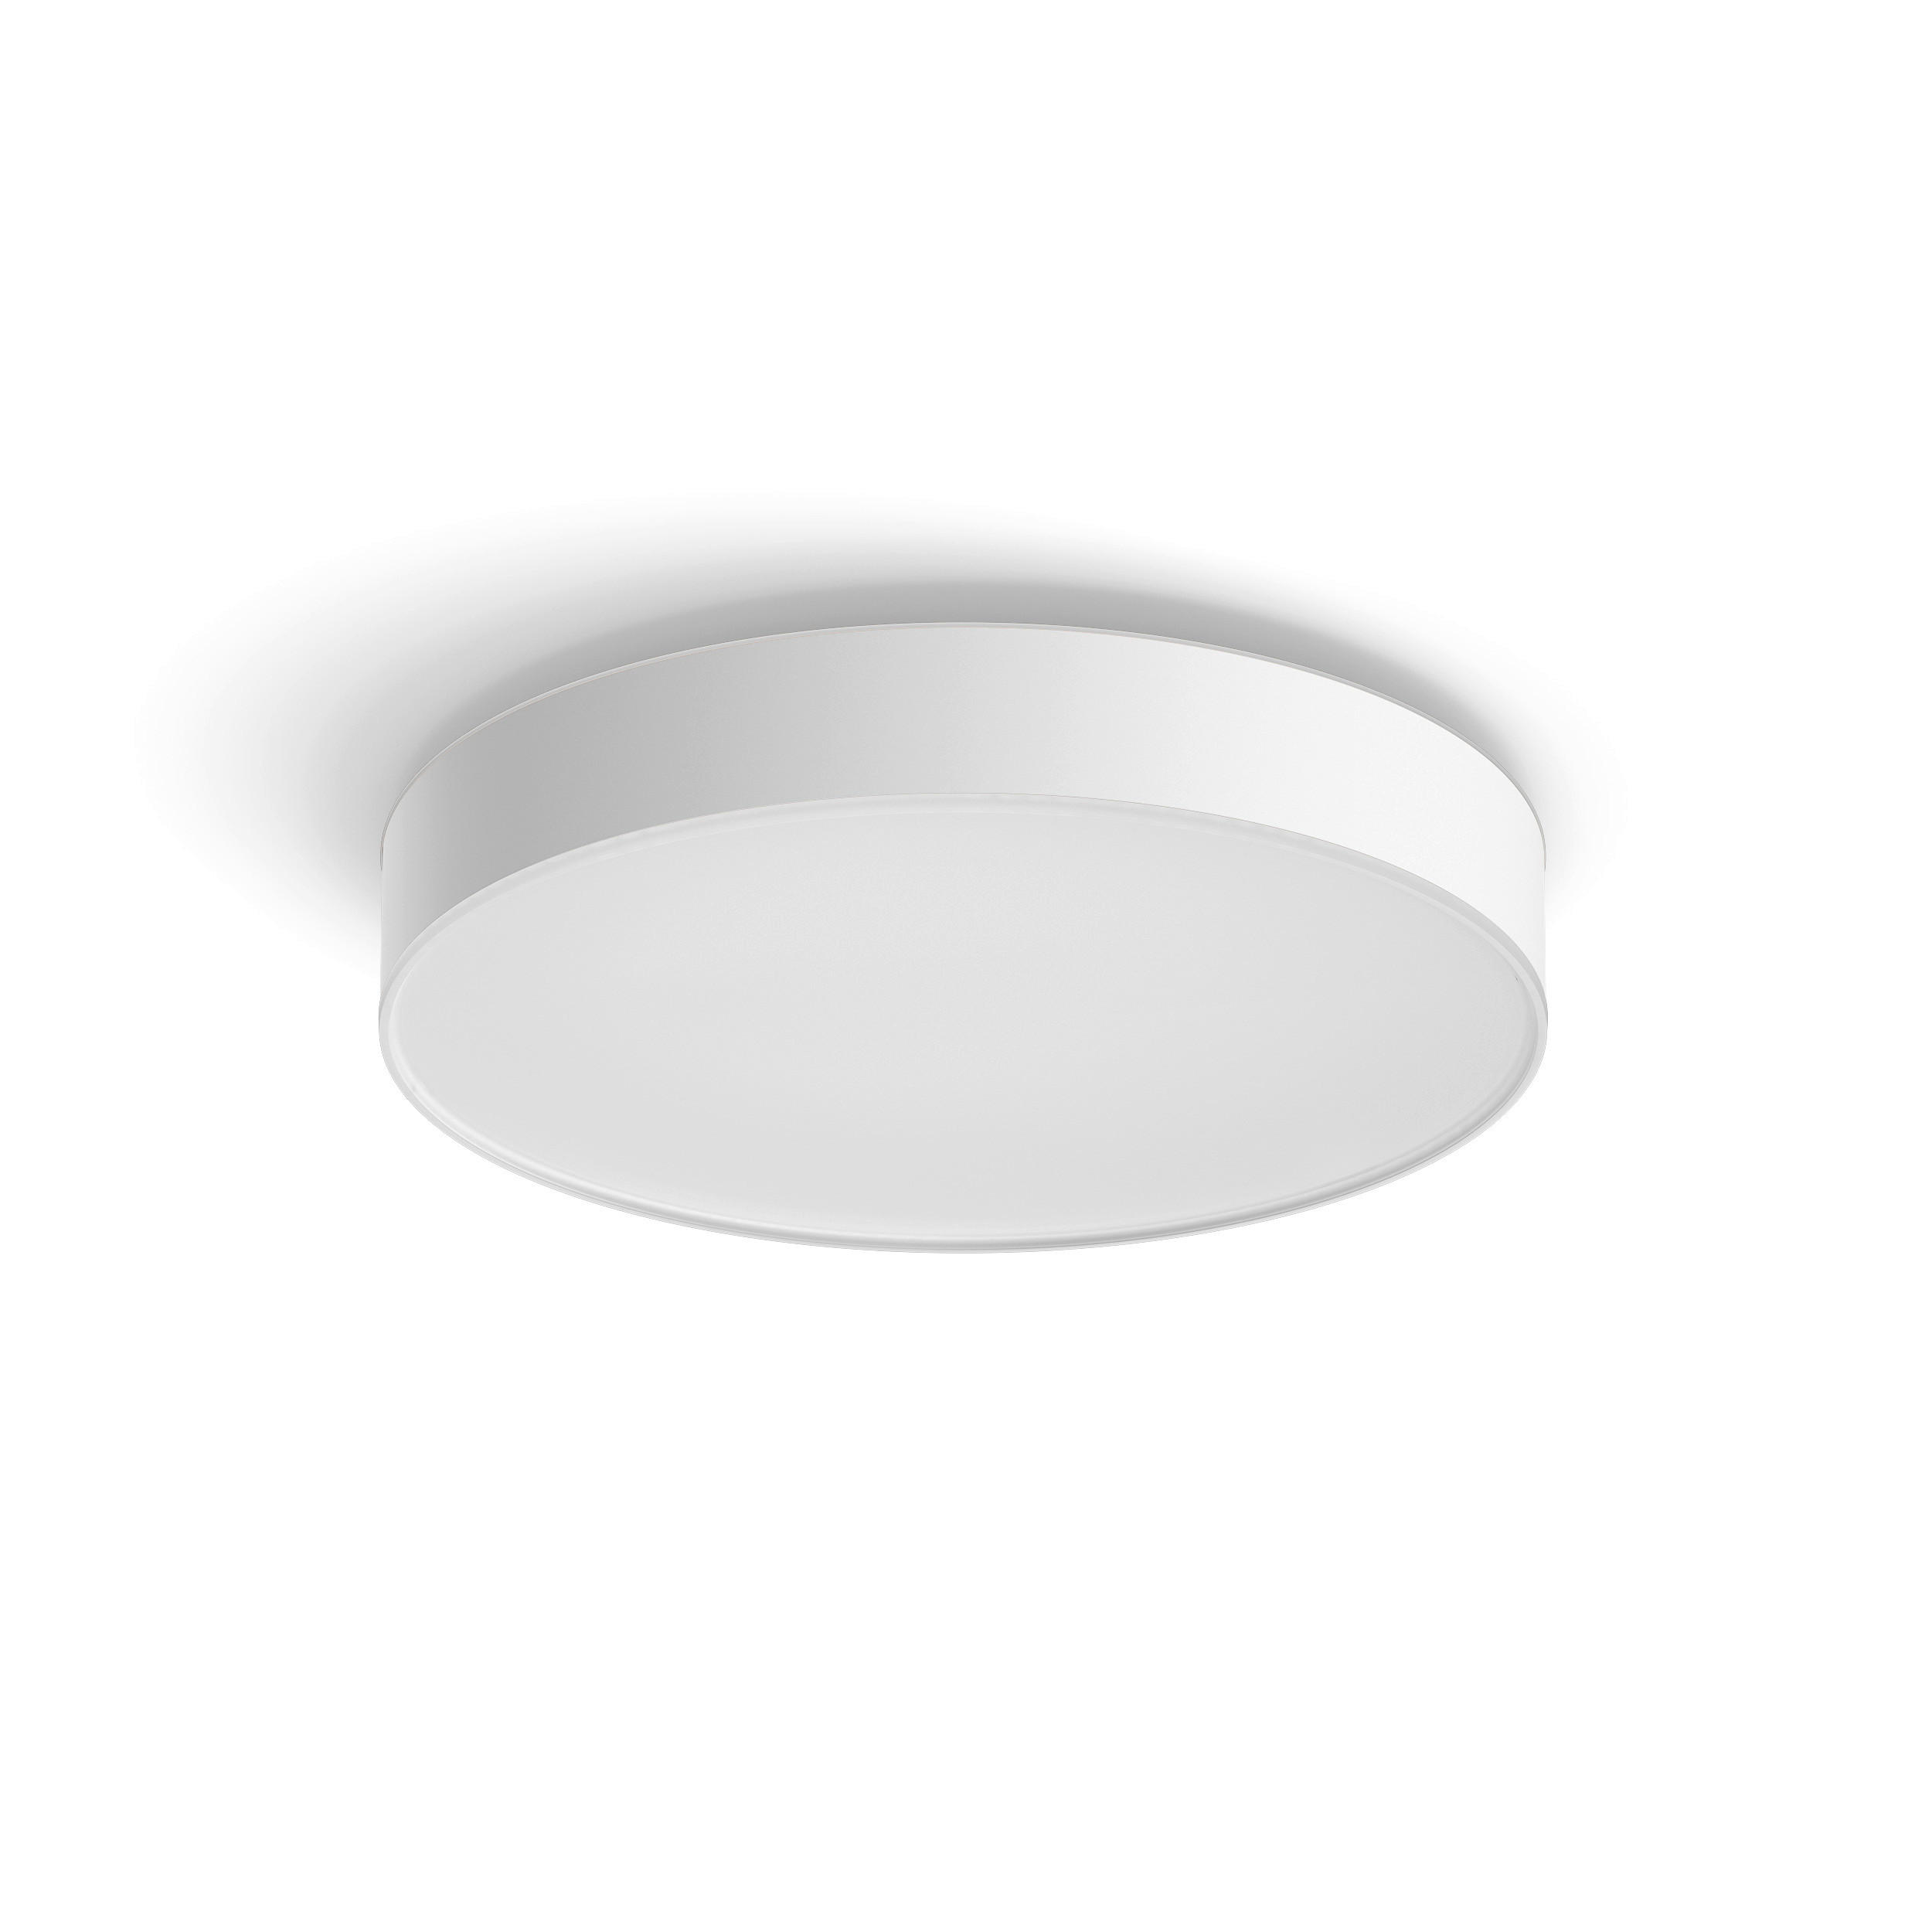 LED-DECKENLEUCHTE Enrave L 42,5/8,4 cm   - Weiß, Design, Kunststoff (42,5/8,4cm) - Philips HUE